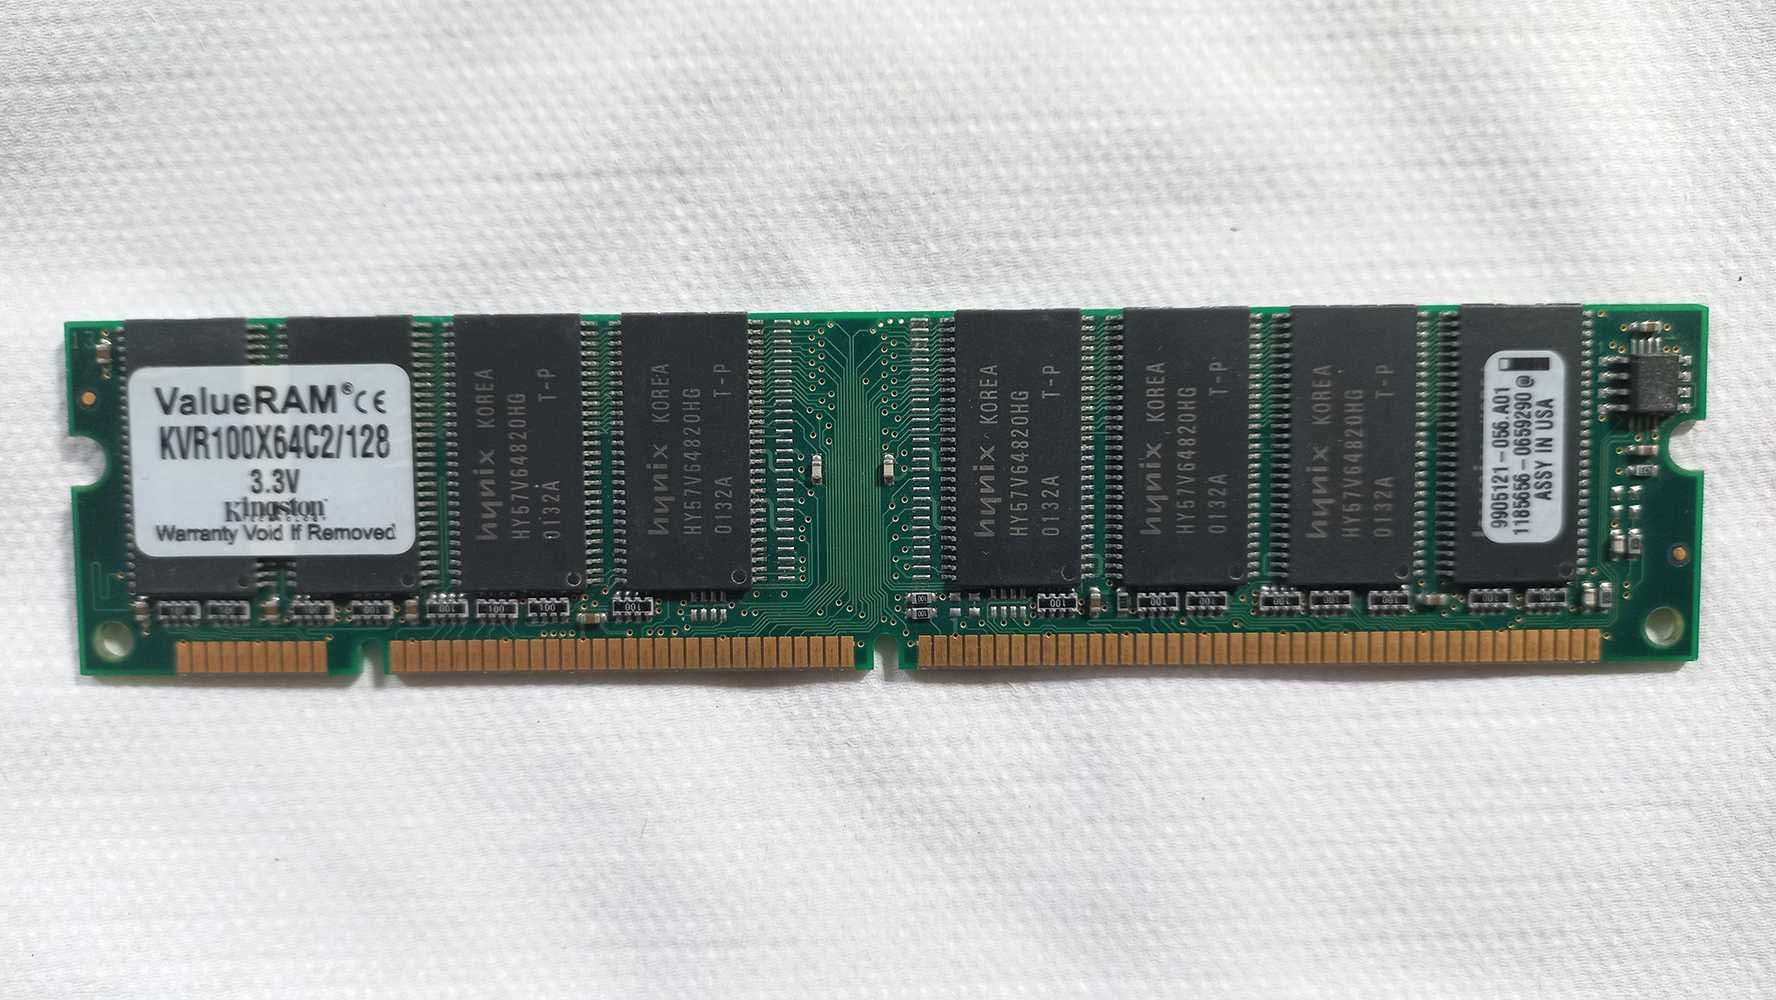 Pamięć RAM Kingston KVR100X64C2/128 SDRAM 100MHz DIMM CL2 3.3V 168-pin